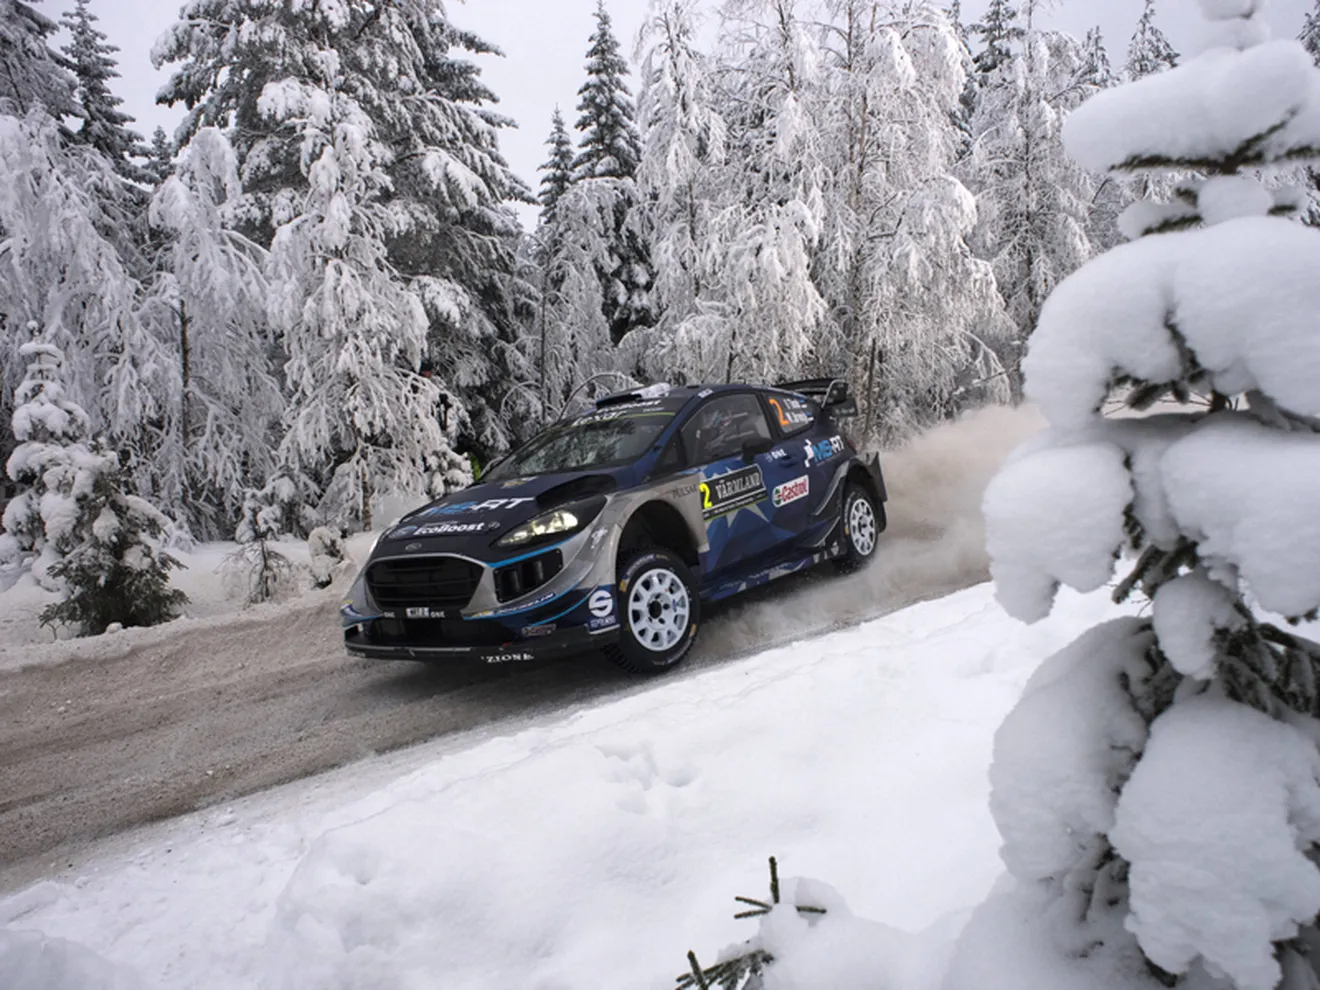 Ott Tänak pone un poco de picante al Rally de Suecia